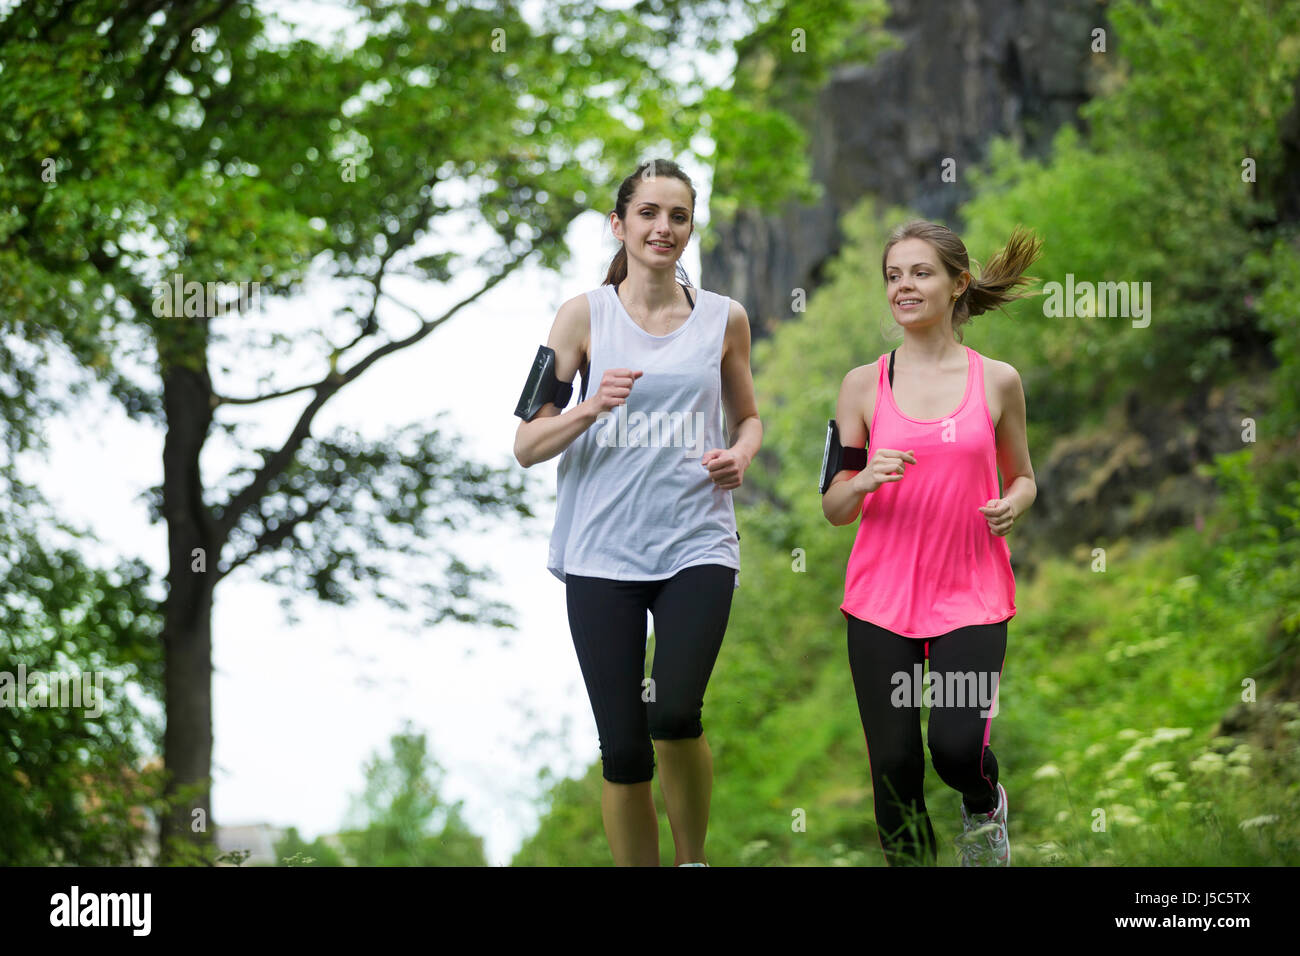 Zwei sportliche Frauen im freien laufen. Aktion und gesunden Lifestyle-Konzept. Stockfoto